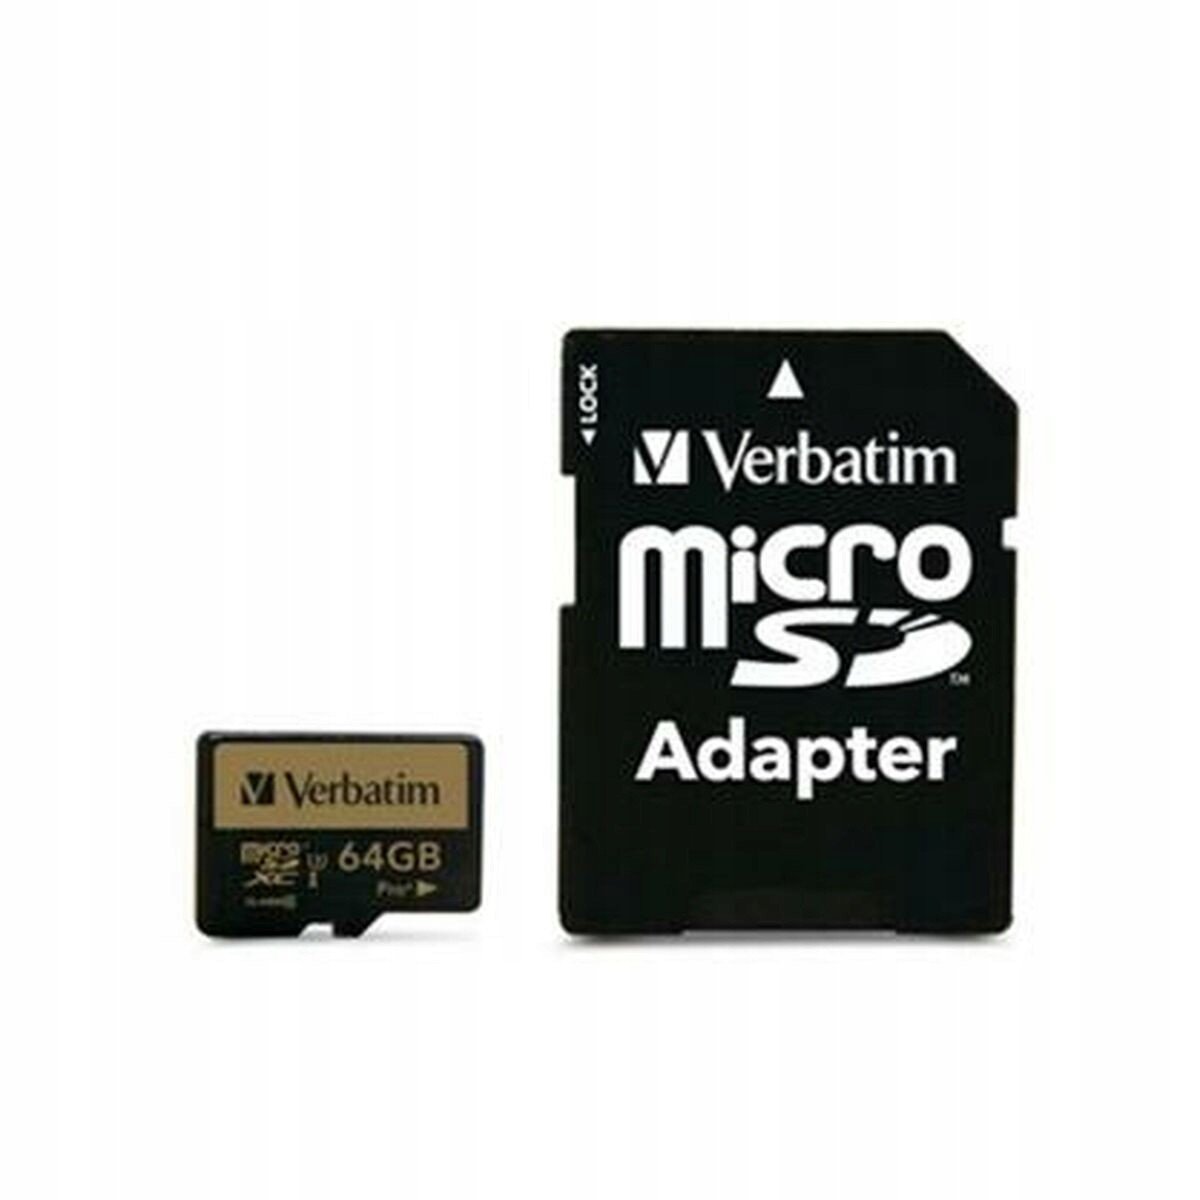 Micro-SD paměťová karta s adaptérem Verbatim Pro